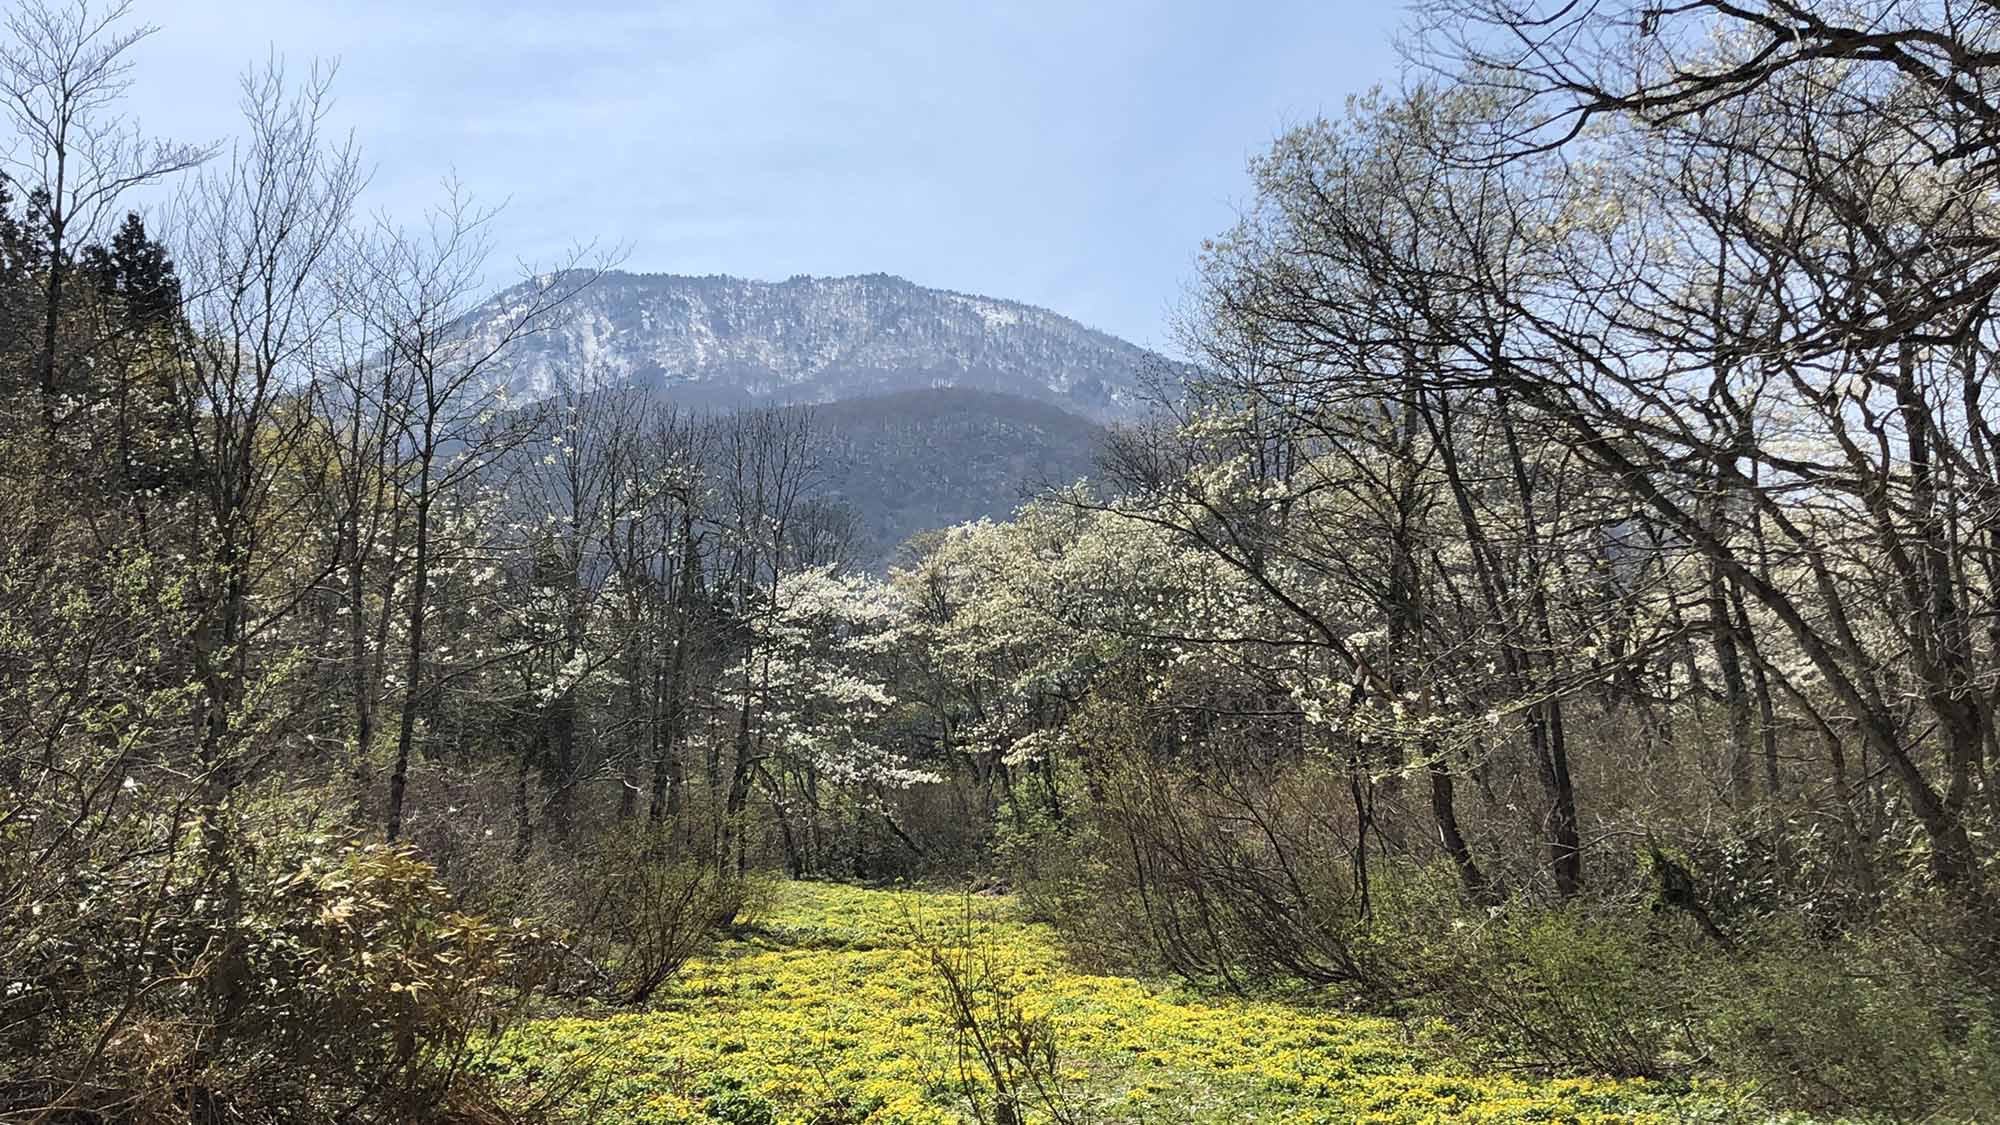 ・【御鹿湿原】春にはリュウキンカが一面に咲き、美しい風景を堪能できます！黒姫山の絶景スポットです